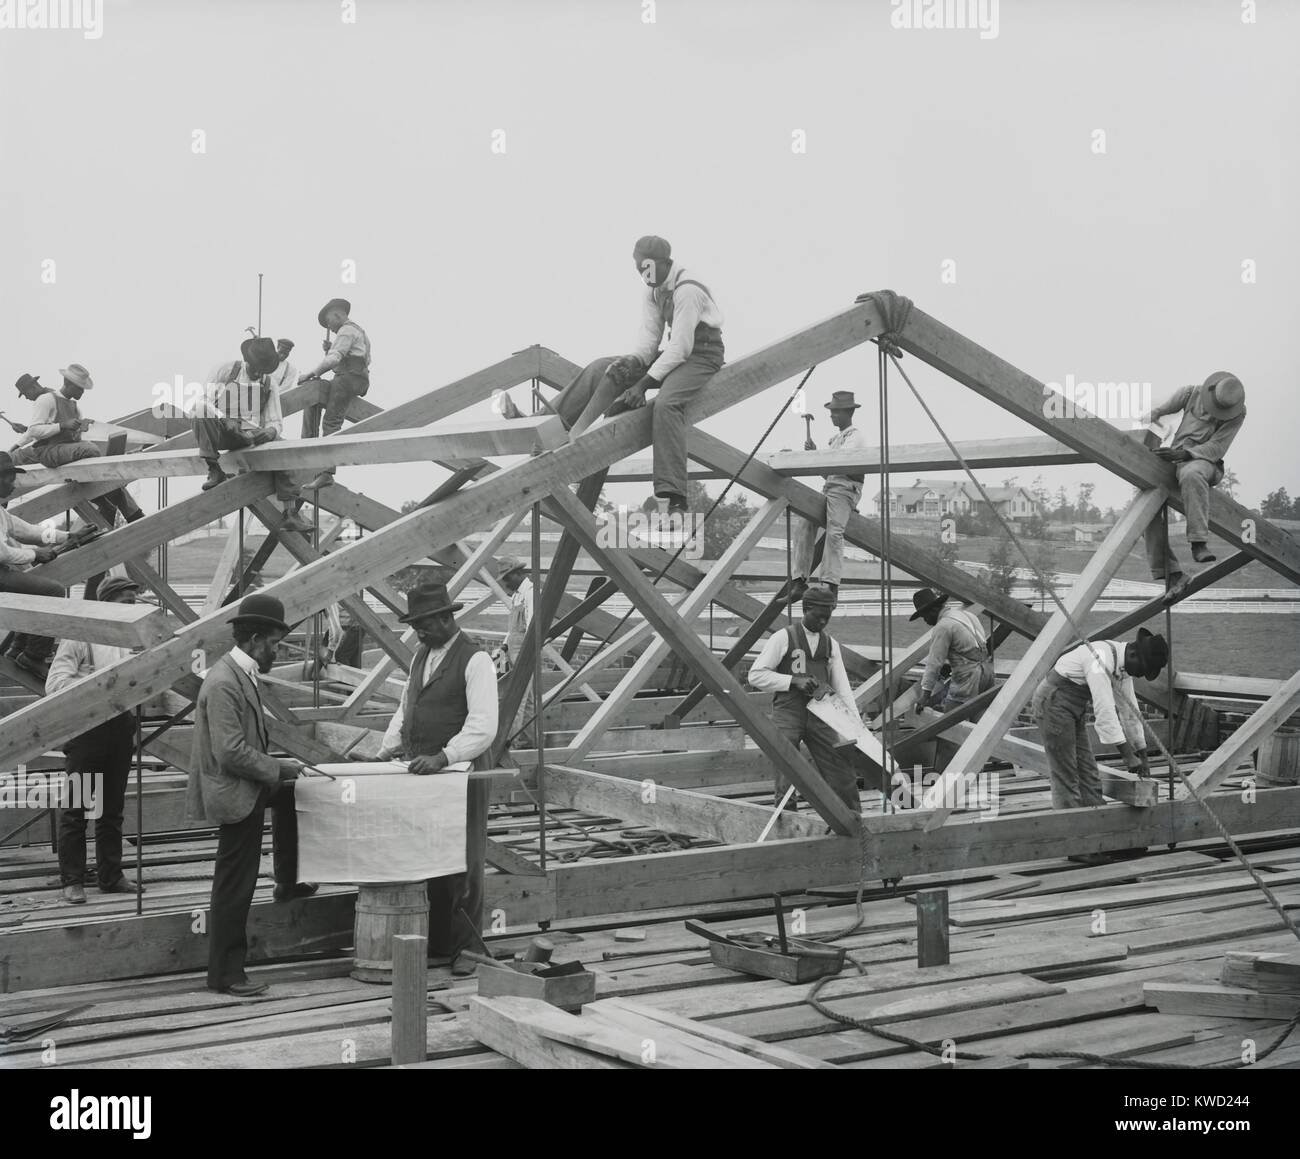 Istituto di Tuskegee agli studenti la costruzione di un tetto in 1902. Durante il lavoro hanno imparato la costruzione di capacità professionali e fece erigere edifici dell'Alabama college per gli afroamericani. Foto di Frances Benjamin Johnston (BSLOC 2017 20 131) Foto Stock